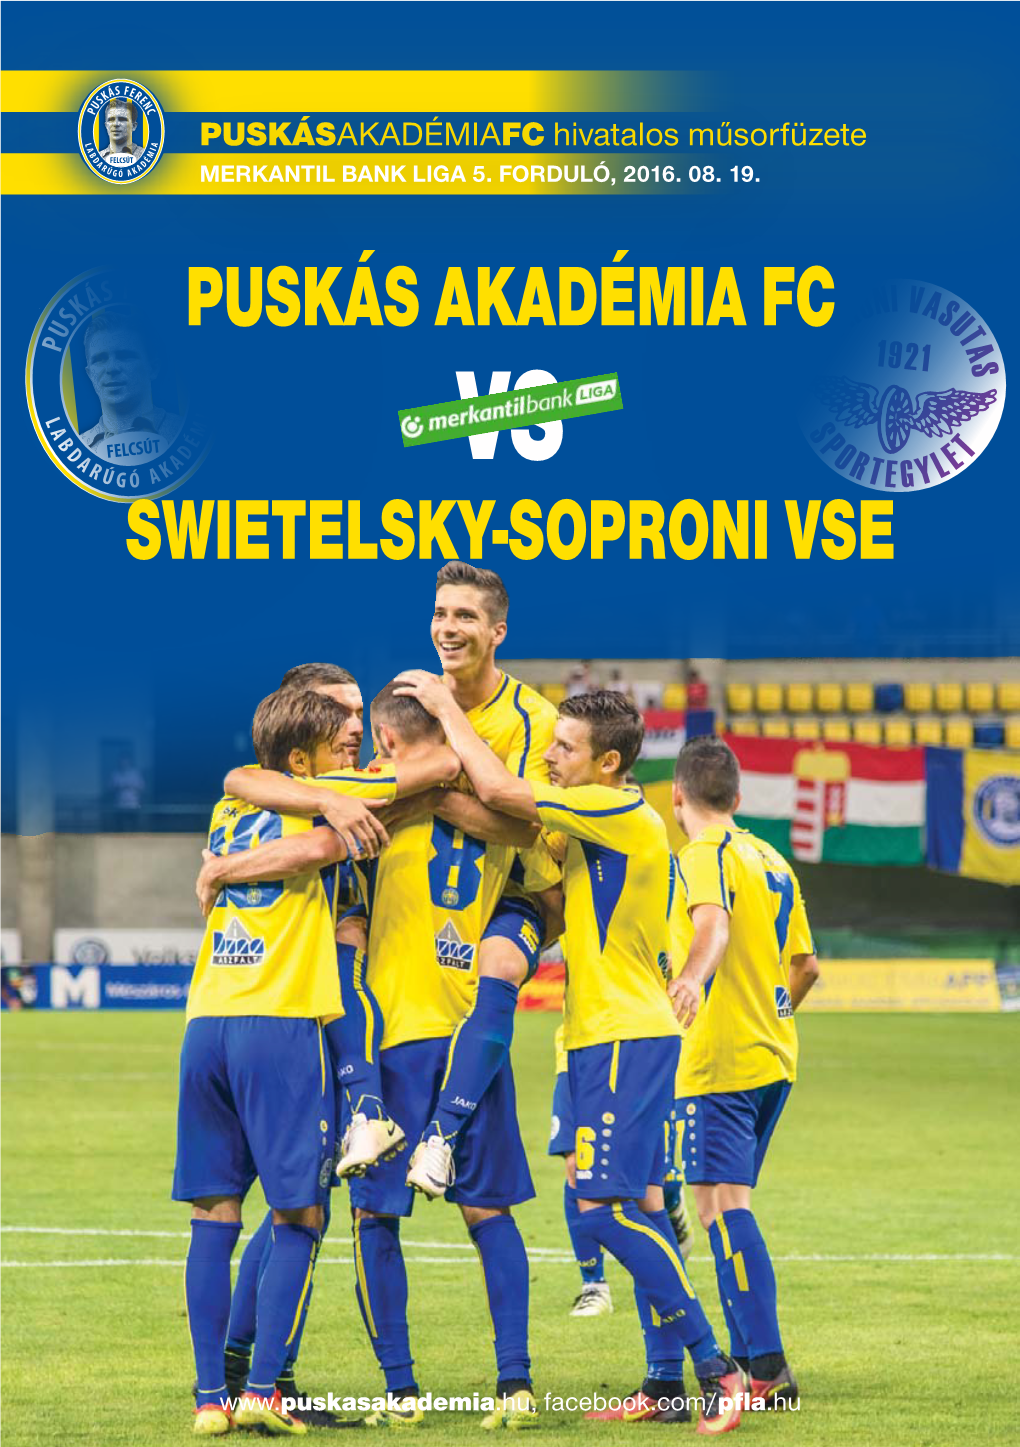 PUSKÁS Akadémia FC Swietelsky-Soproni